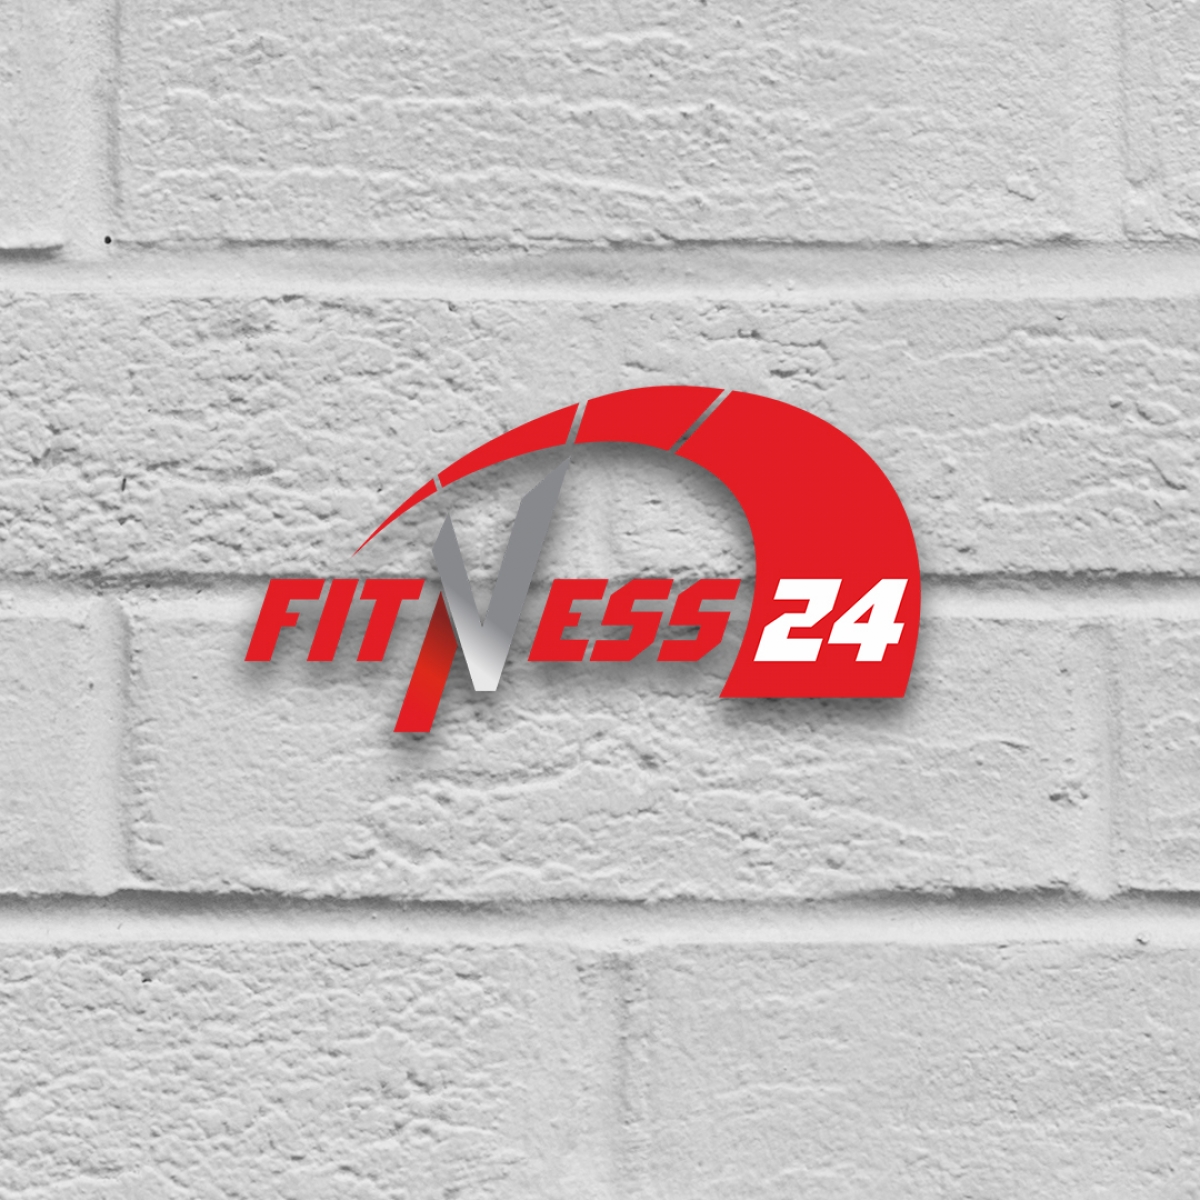 Обращаем внимание на порядок допуска в Клубы сети Fitness24.